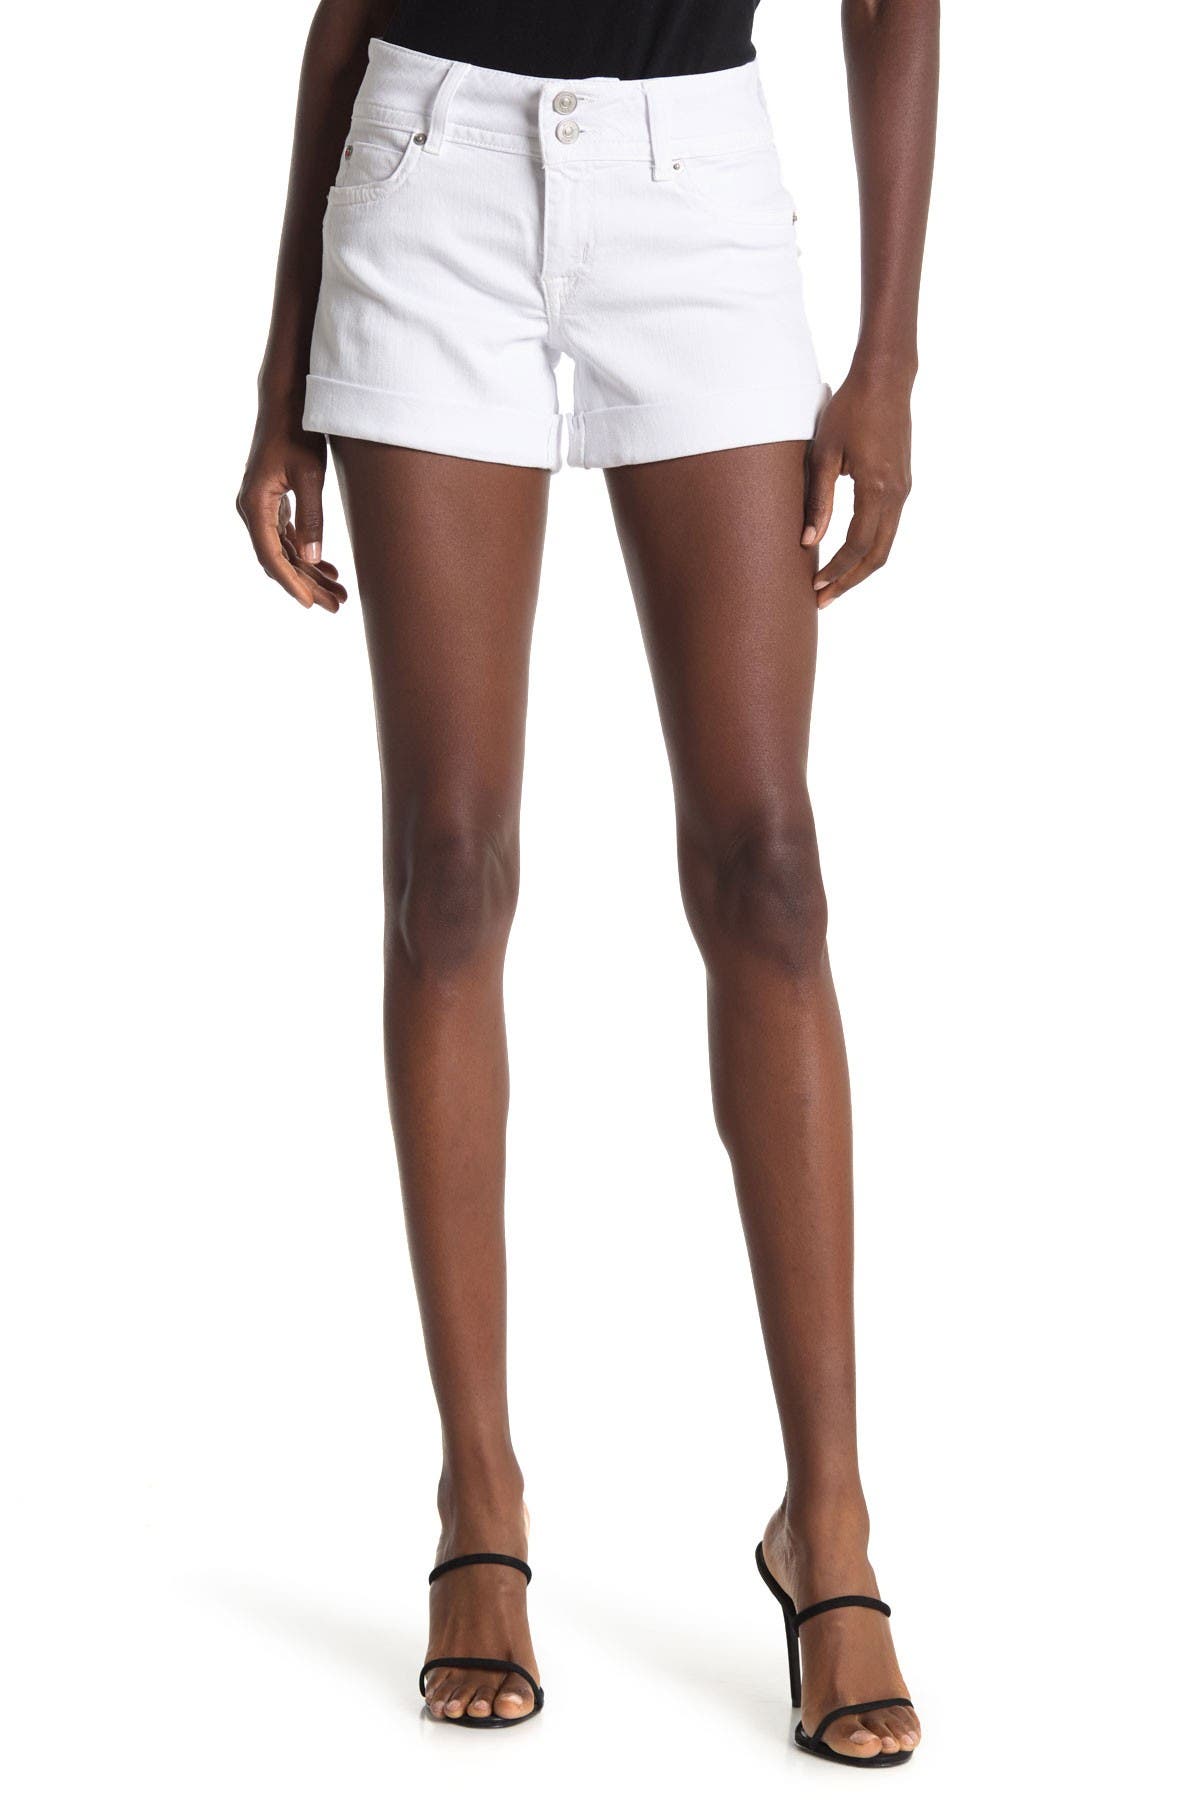 hudson jean shorts womens